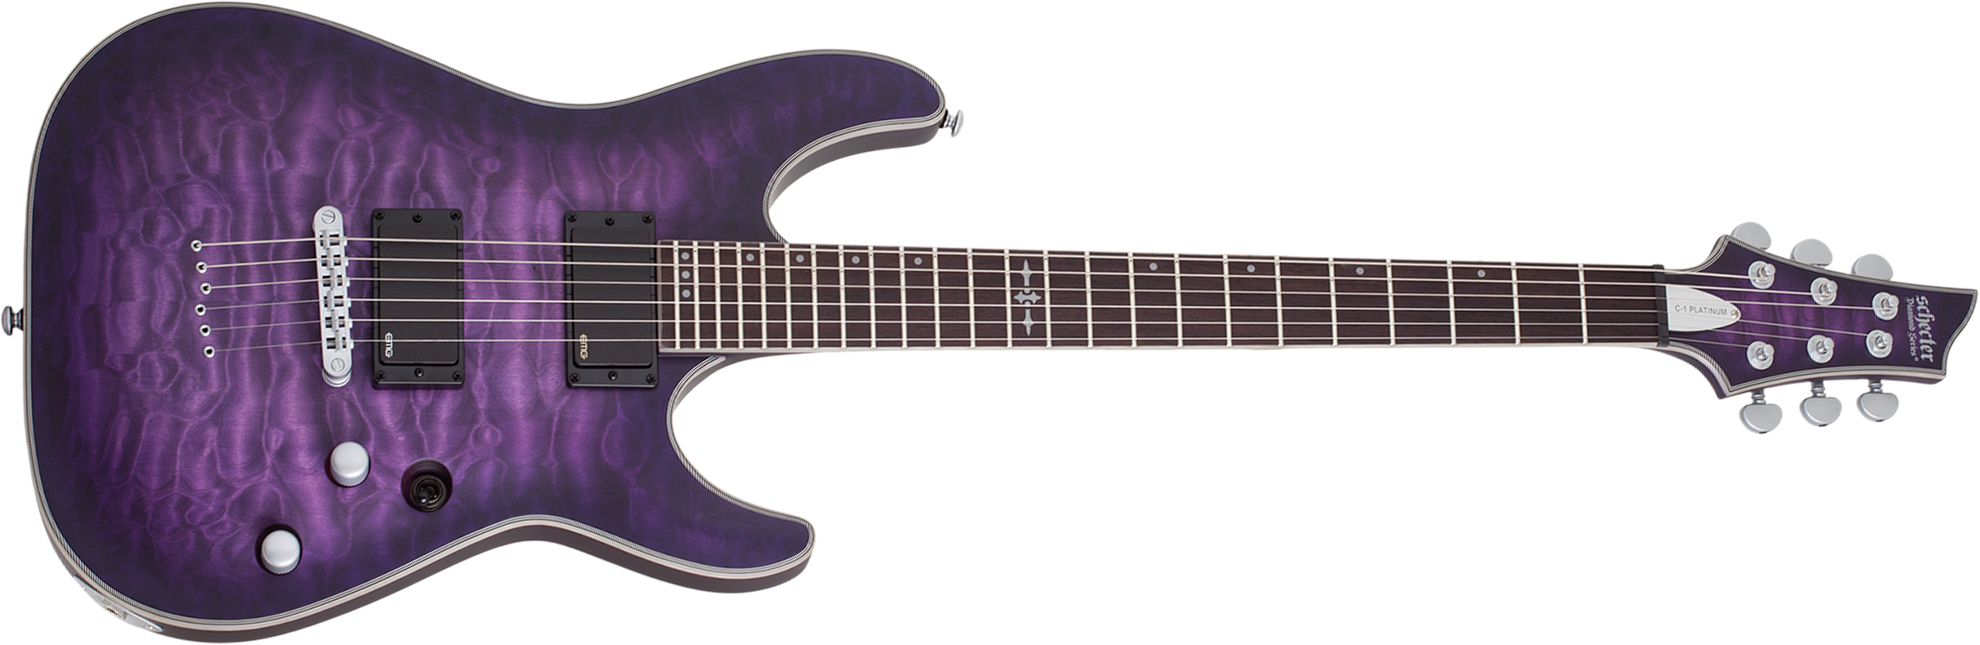 Schecter C-1 Platinum 2h Emg Ht Eb - Satin Purple Burst - Guitare Électrique Forme Str - Main picture